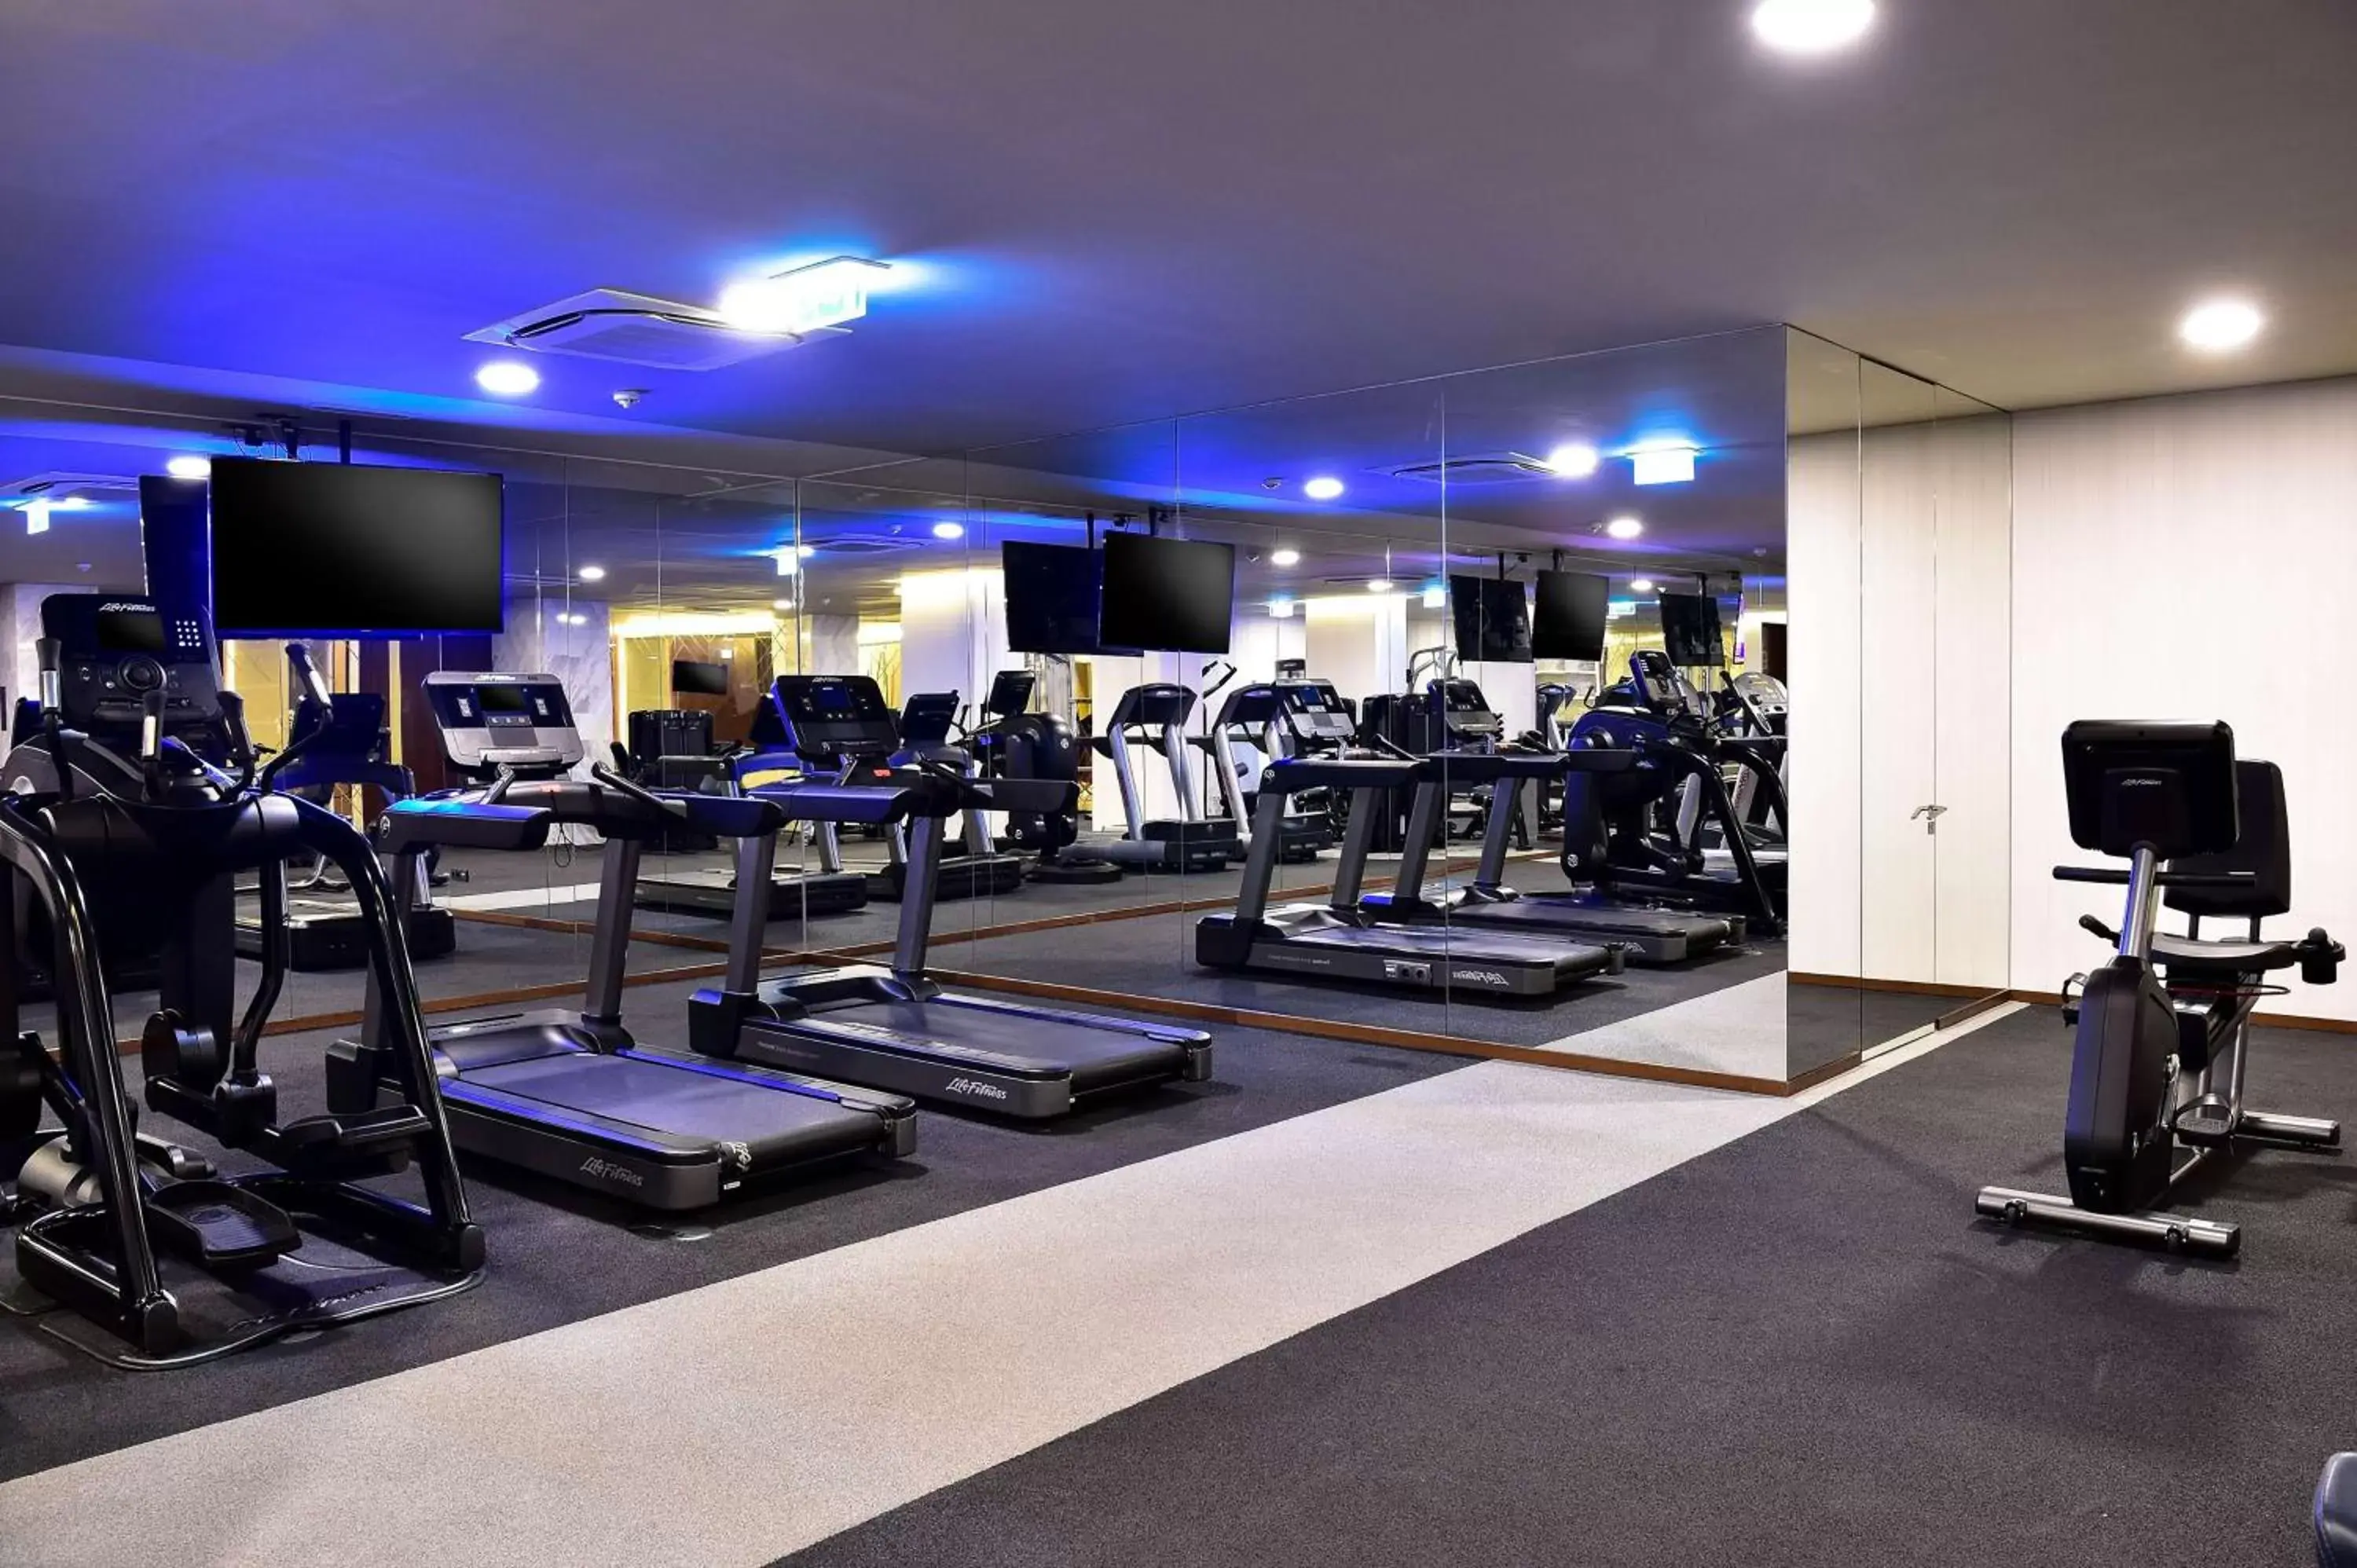 Fitness centre/facilities, Fitness Center/Facilities in Tivoli Avenida Liberdade Lisboa – A Leading Hotel of the World